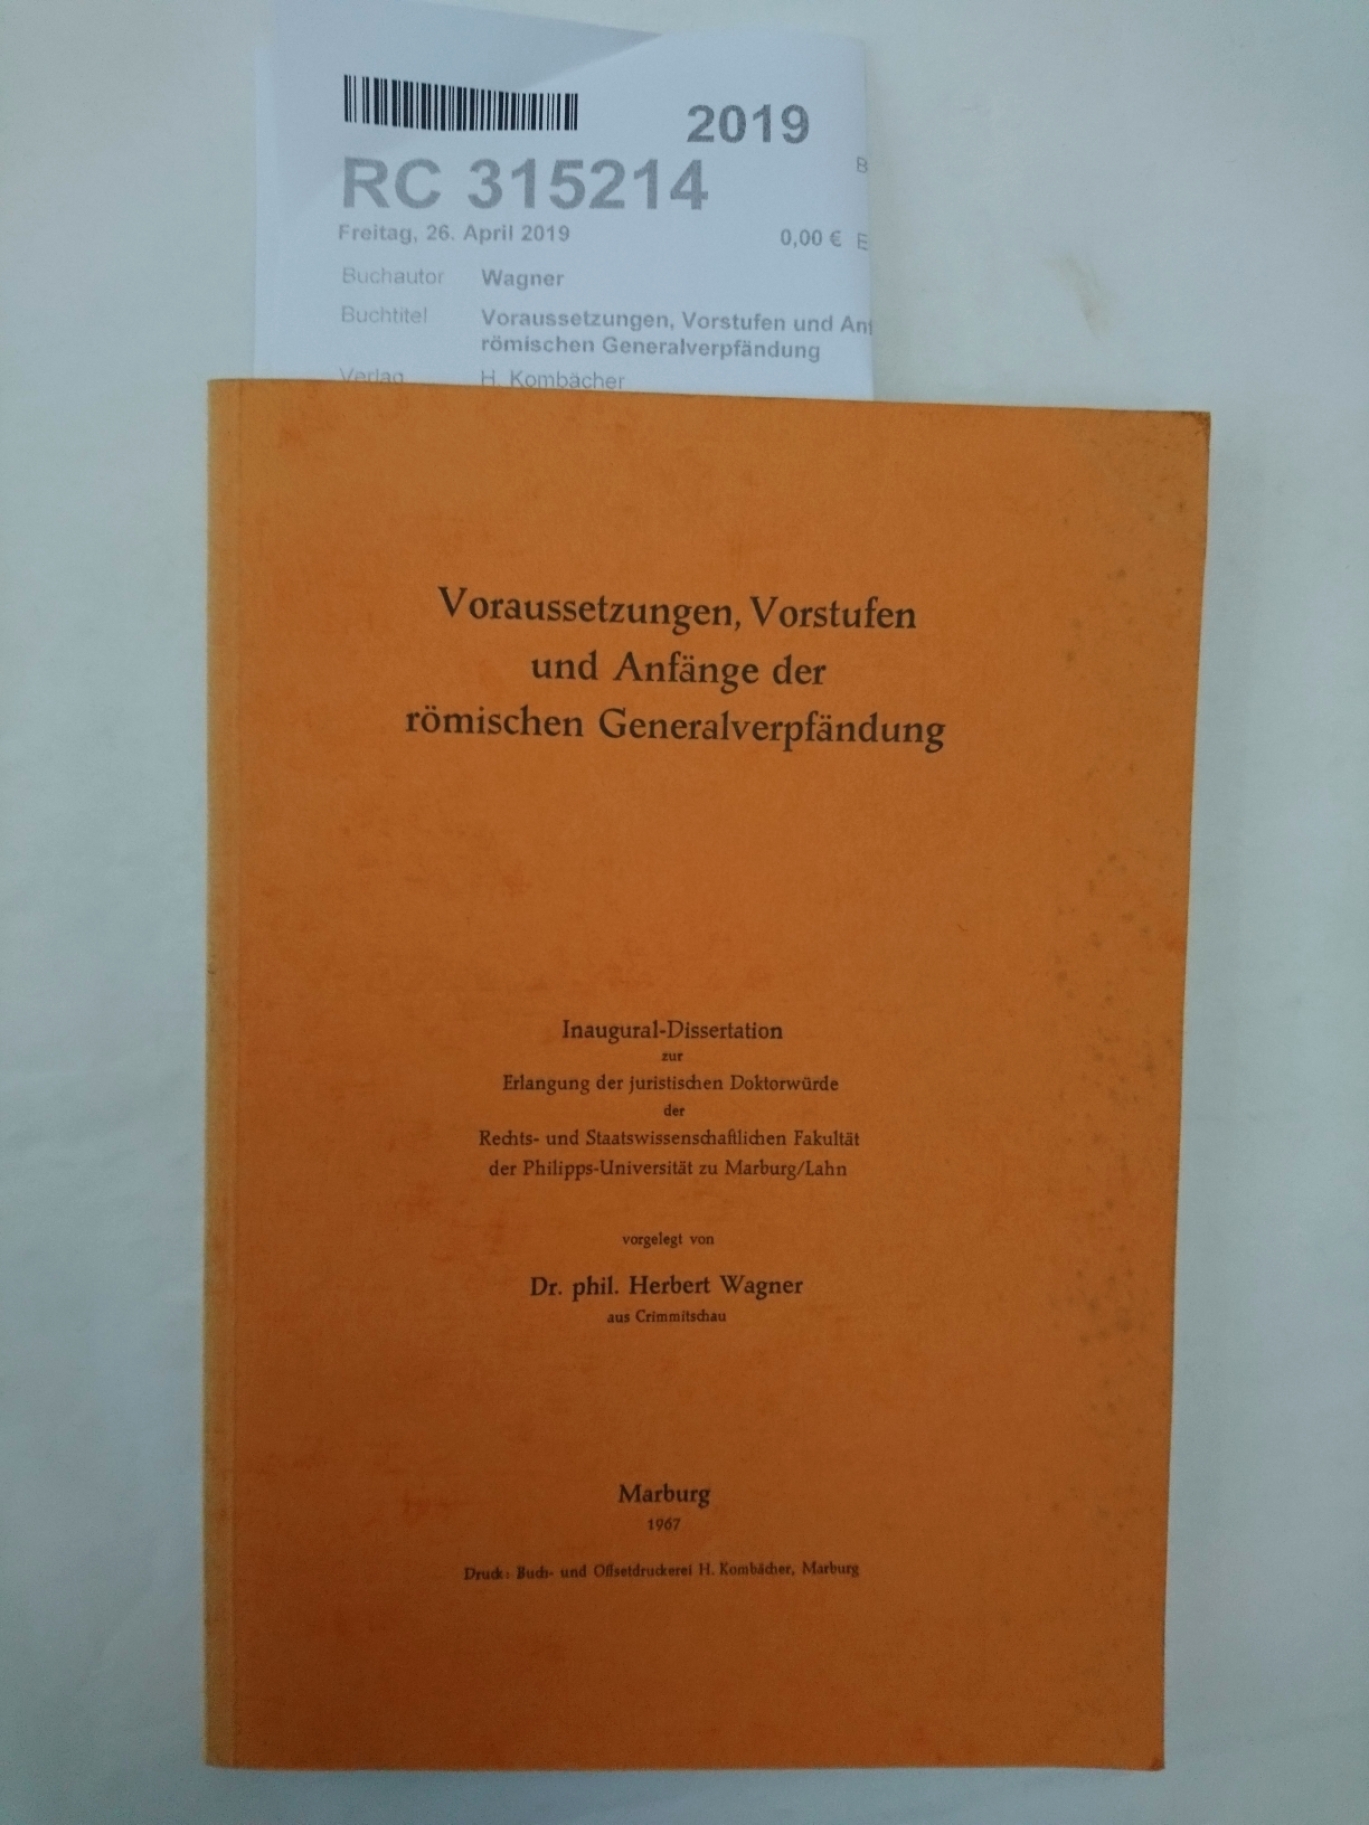 Wagner, Dr. phil. Herbert: Voraussetzungen, Vorstufen und Anfänge der römischen Generalverpfändung Inaugural-Dissertation